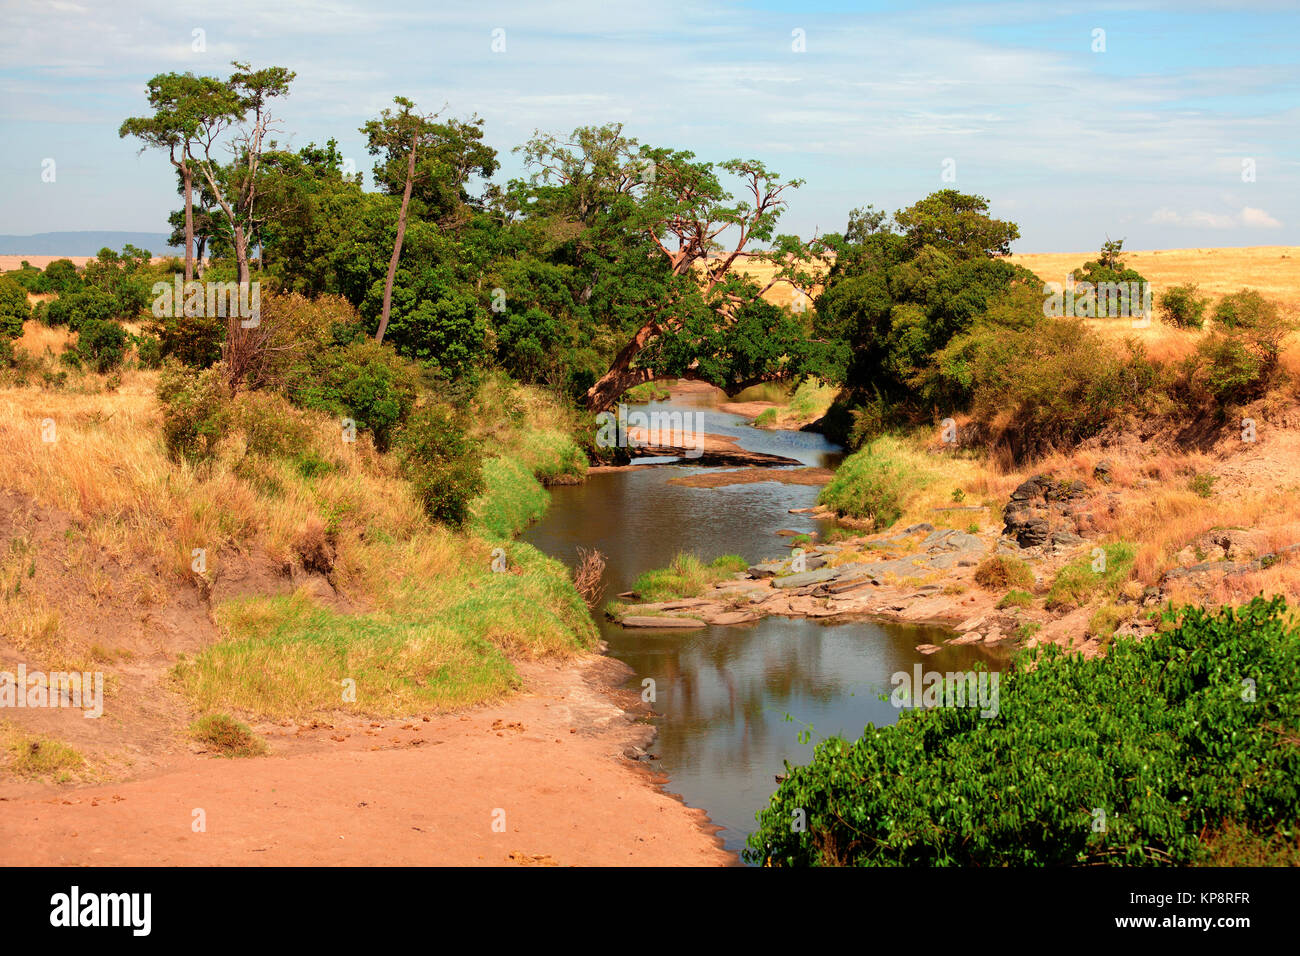 River in Masai Mara,River in Masai Mara,River in Masai Mara,River in Masai Mara Stock Photo